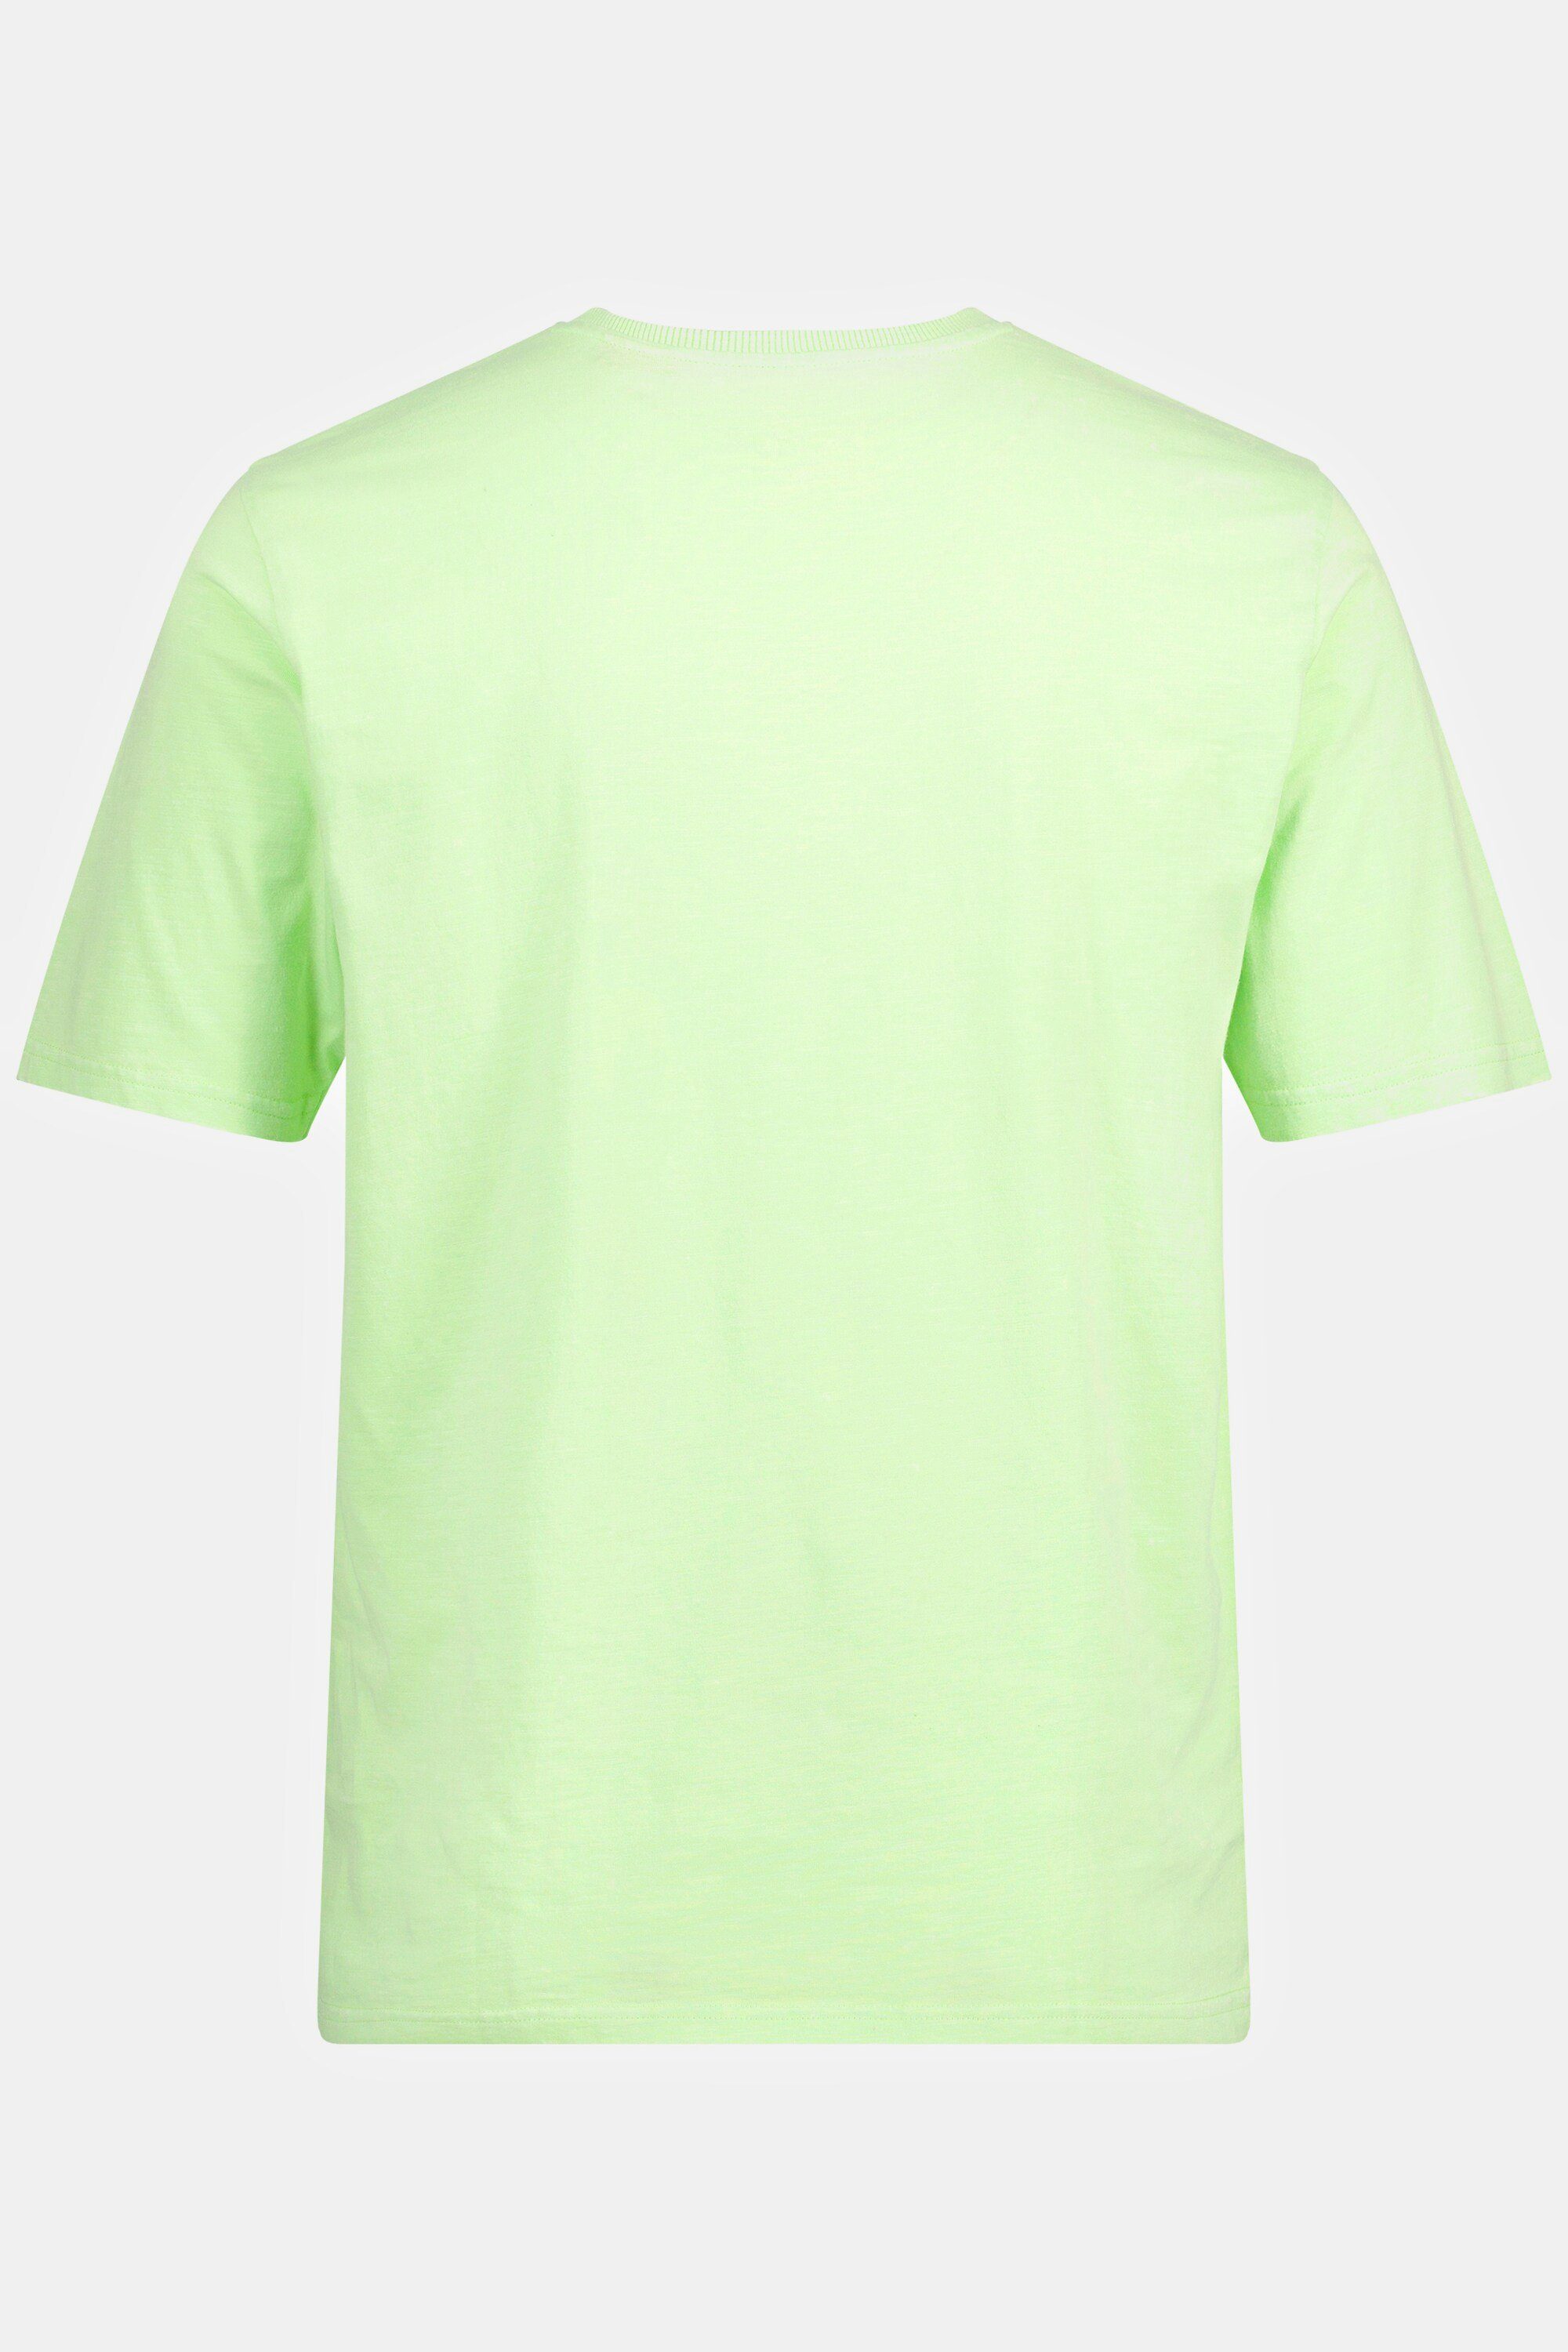 V-Ausschnitt Halbarm T-Shirt T-Shirt grün JP1880